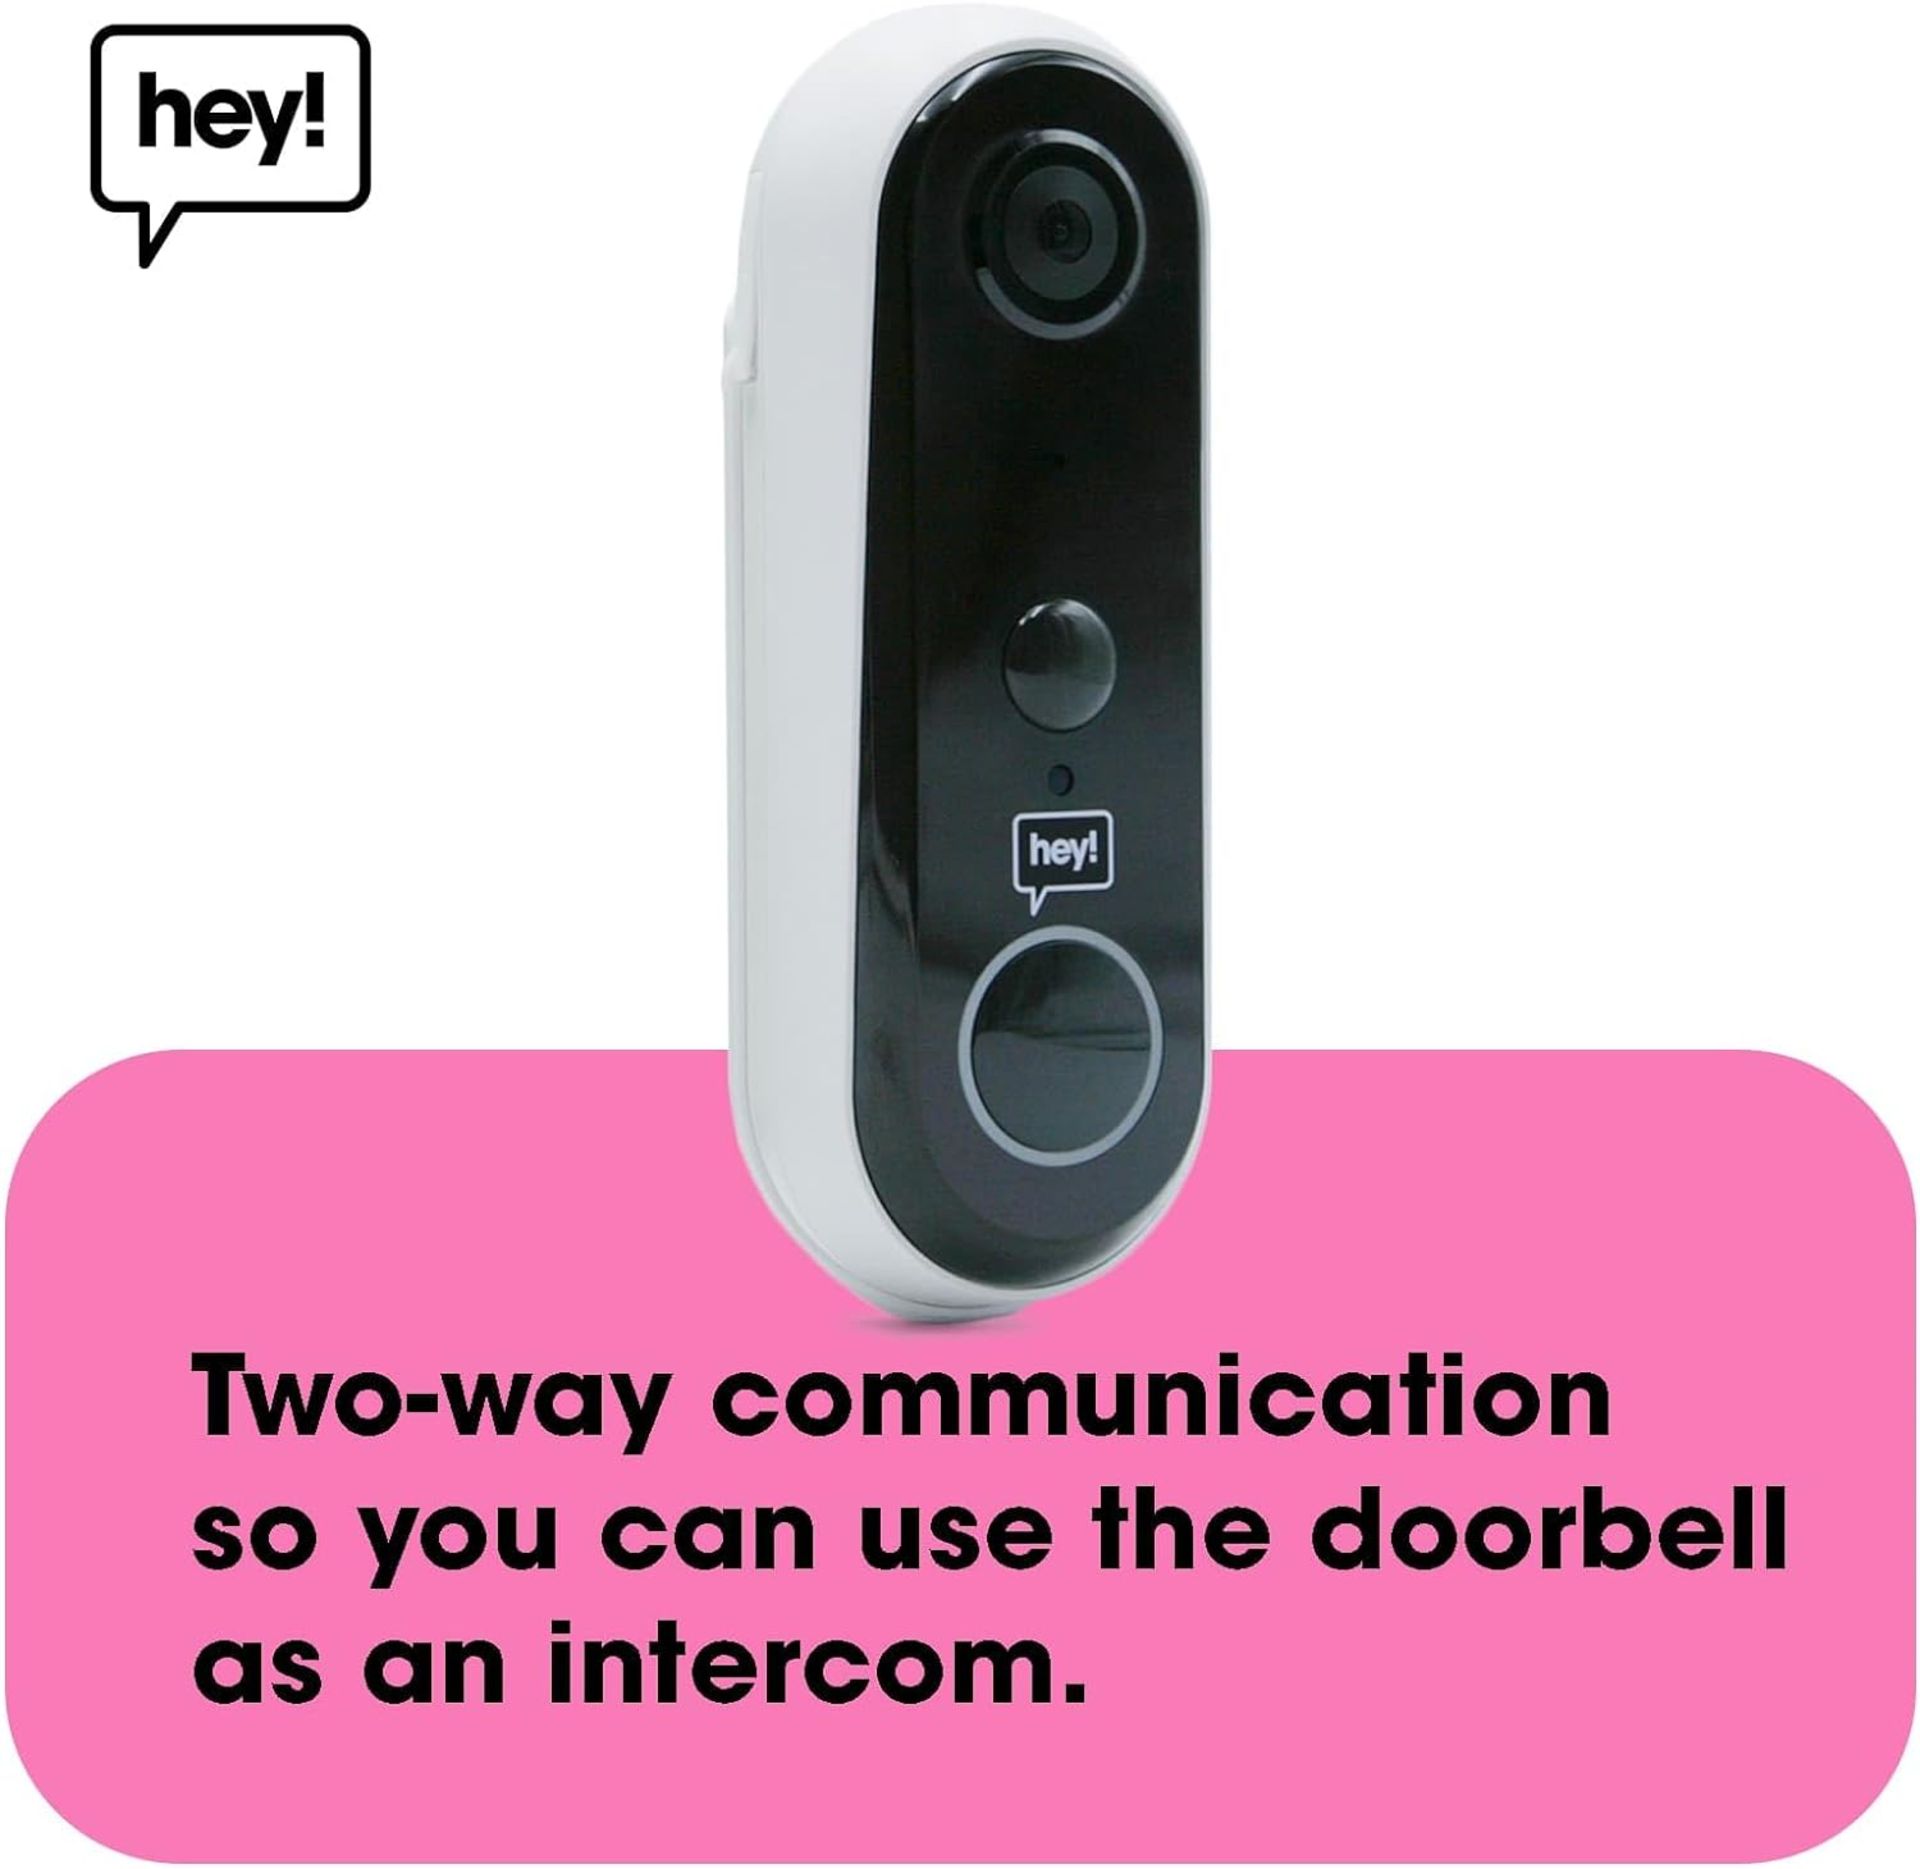 3x NEW & BOXED HEY! SMART Wireless Video Doorbell. RRP £79.99 EACH. Wifi Doorbell Security Camera - Image 5 of 6